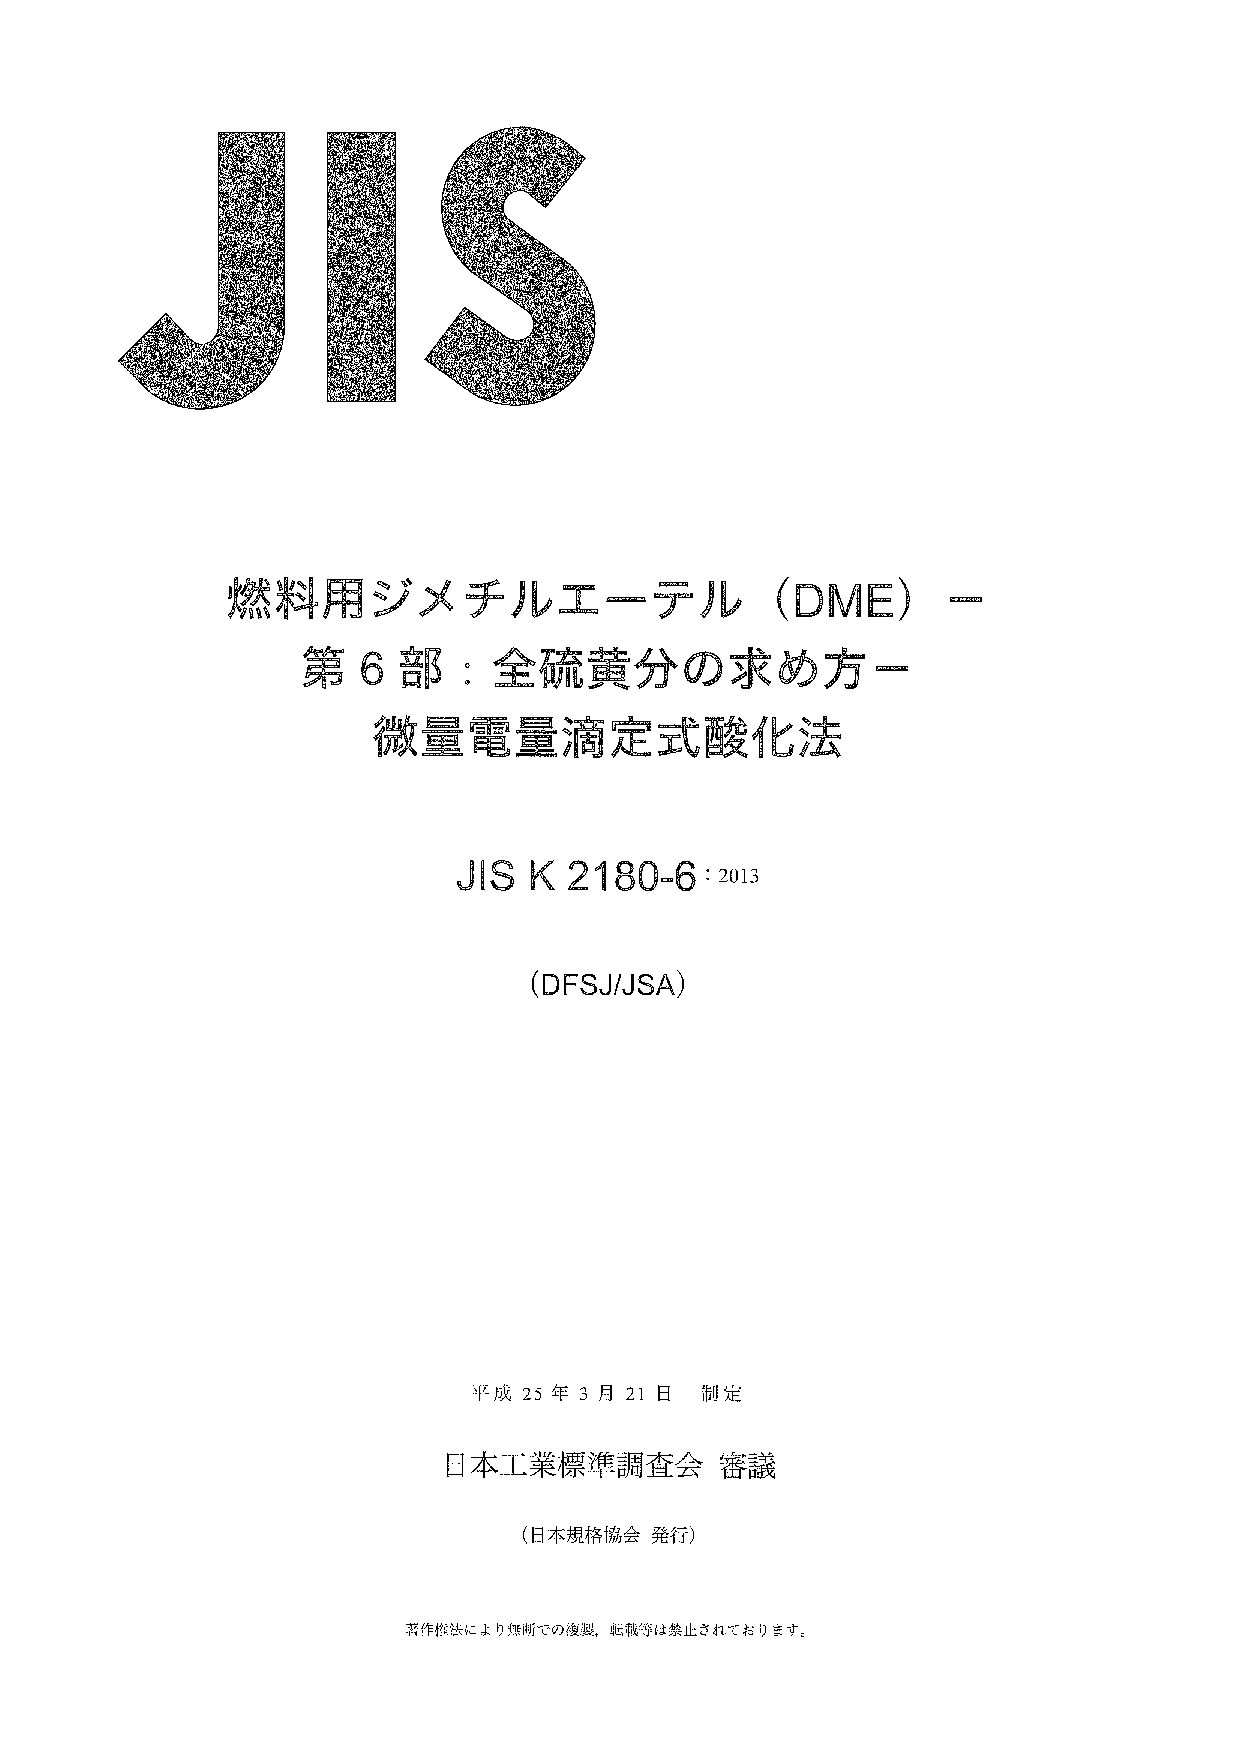 JIS K 2180-6:2013封面图